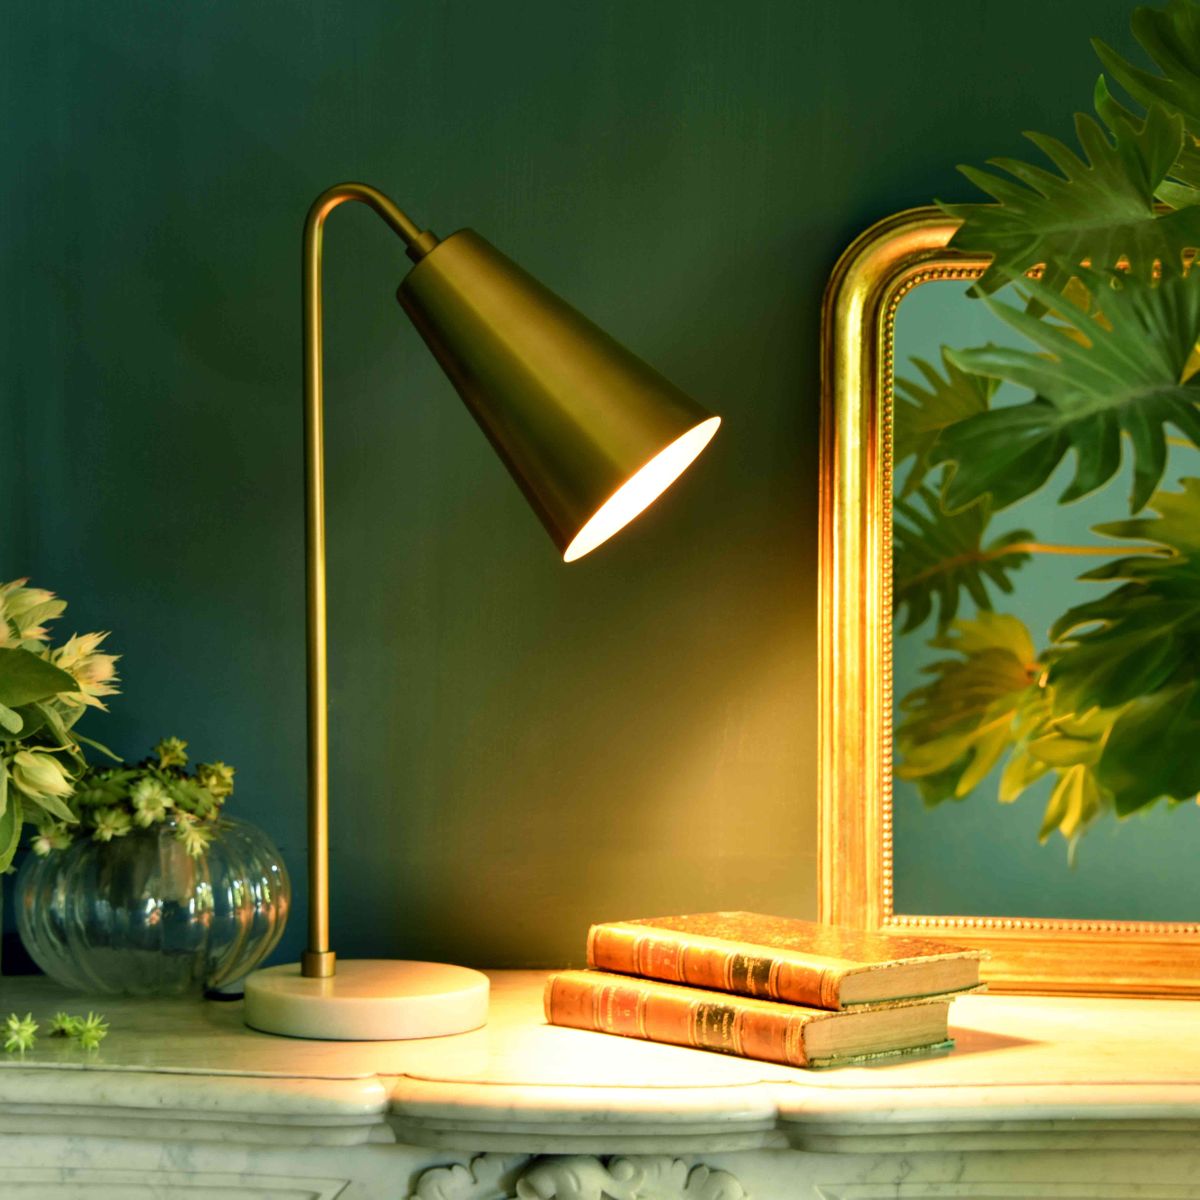 Lampe de bureau scandinave en bois et métal jaune